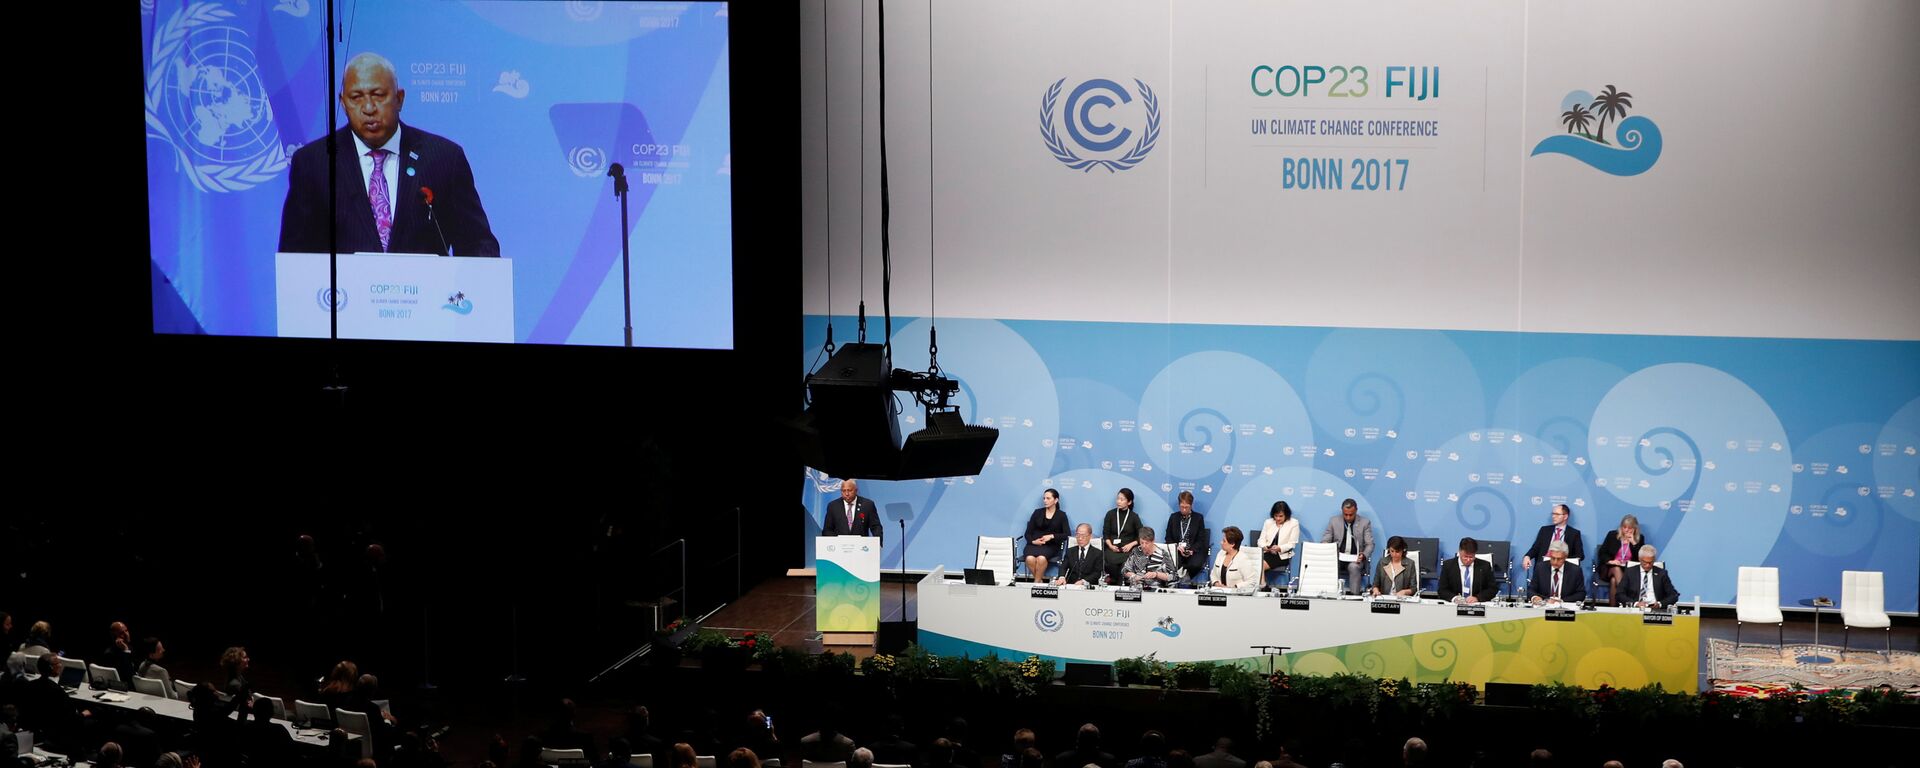 Frank Bainimarama, o novo presidente da COP 23, fala durante a sessão de abertura da COP23 Conferência das Nações Unidas sobre Mudanças Climáticas 2017, organizada por Fiji, mas realizada no Centro Mundial de Conferências de Bonn, Alemanha. - Sputnik Brasil, 1920, 06.11.2017